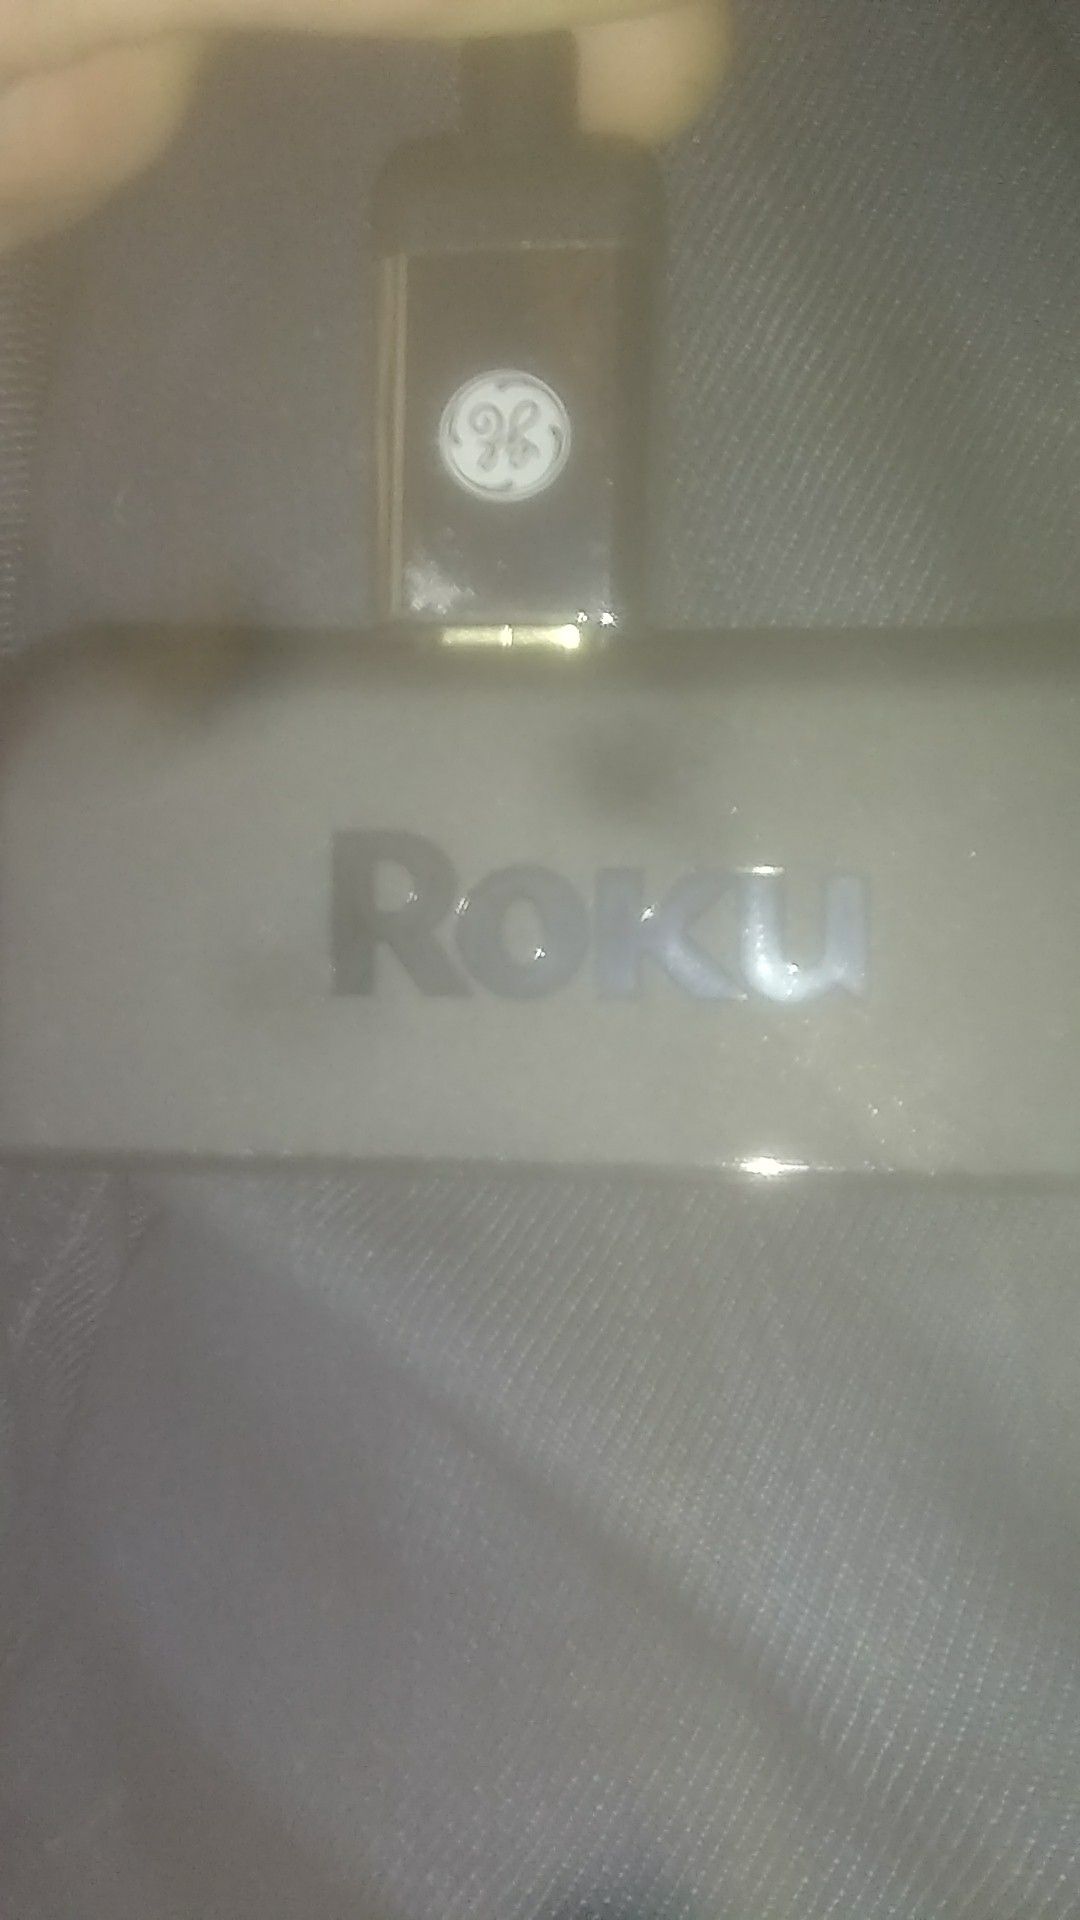 Roku express